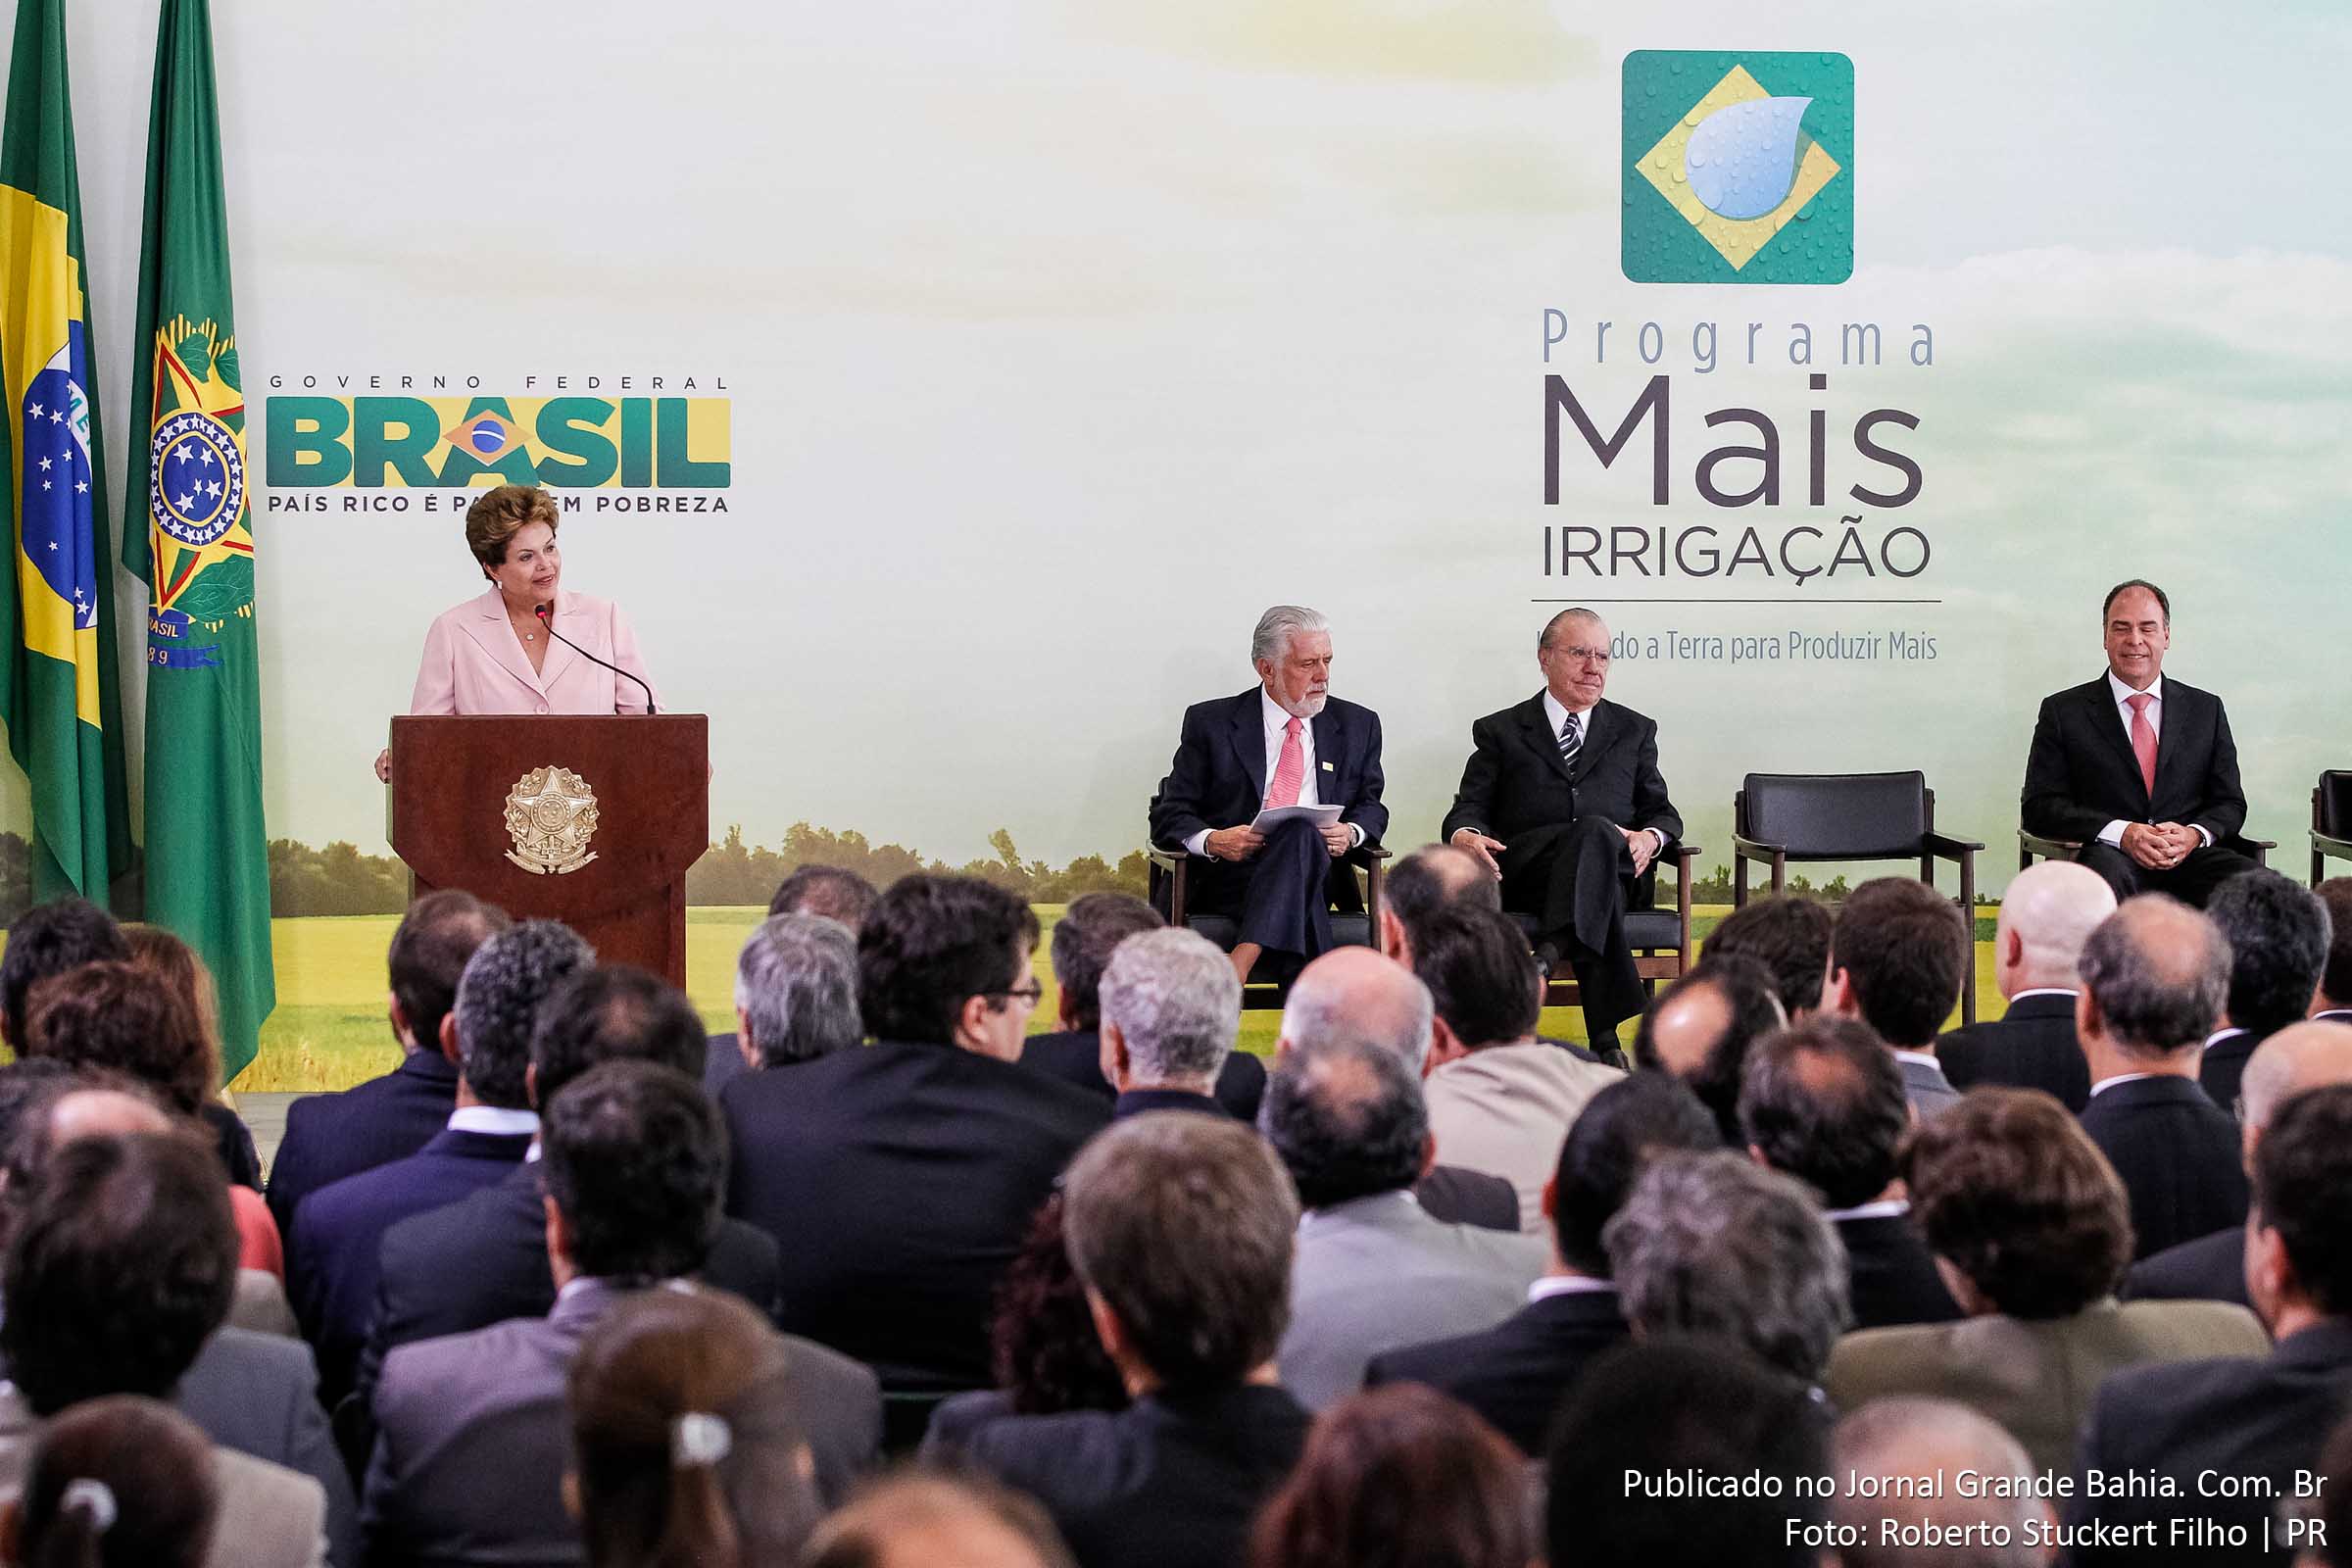 Dilma Rousseff destaca que os perímetros públicos de irrigação em fase de implantação pela Codevasf na Bahia – Salitre, em Juazeiro, e Baixio de Irecê, em Xique-Xique – receberão, juntos, o maior aporte de investimentos públicos previstos no eixo das parcerias público-privadas do programa Mais Irrigação.